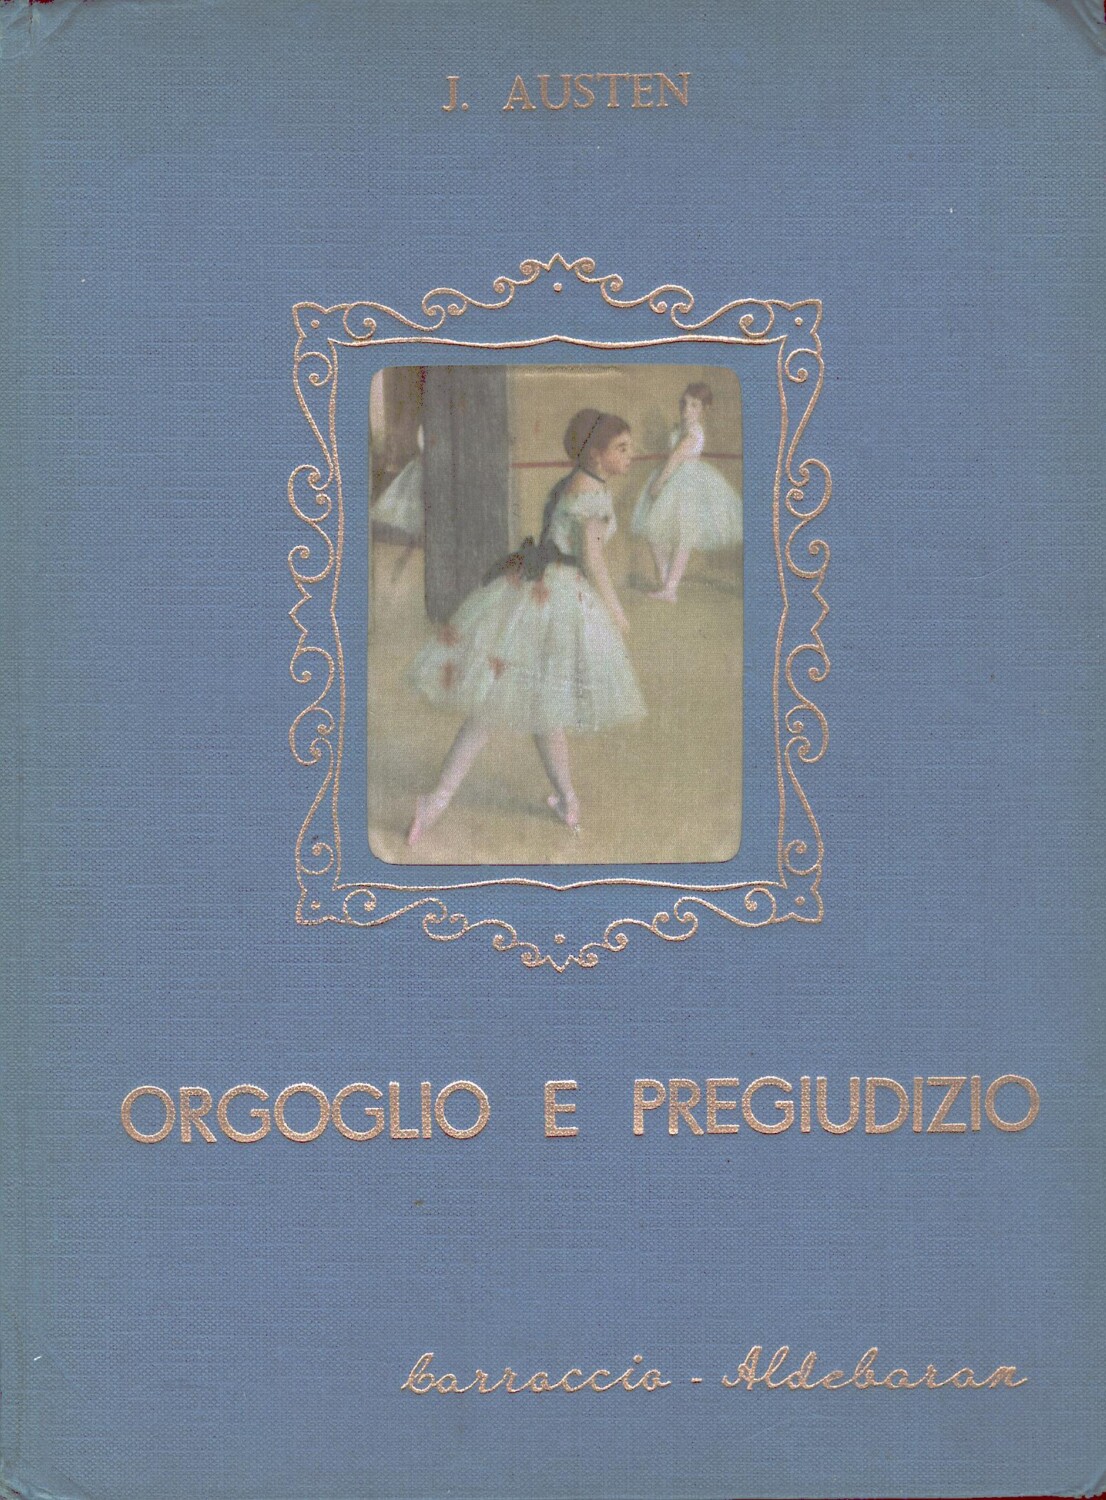 Orgoglio e pregiudizio di J. Austen - Collana Orchidea illustrata da Mondaini...